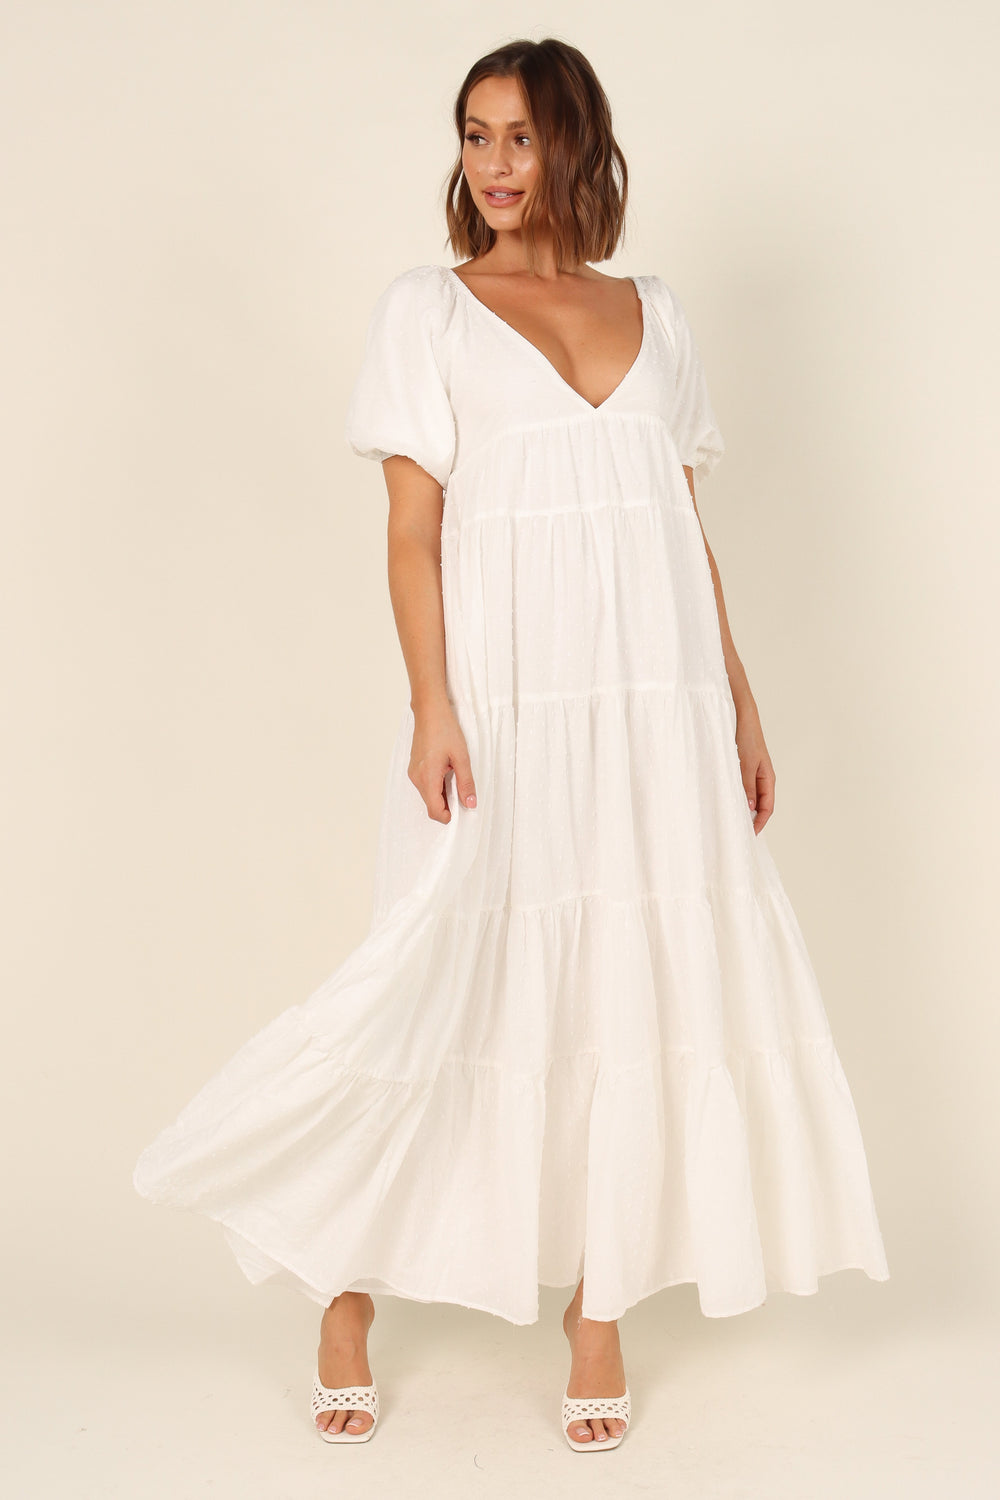 DRESSES @Harper Dress - White Spot (waiting on bulk)